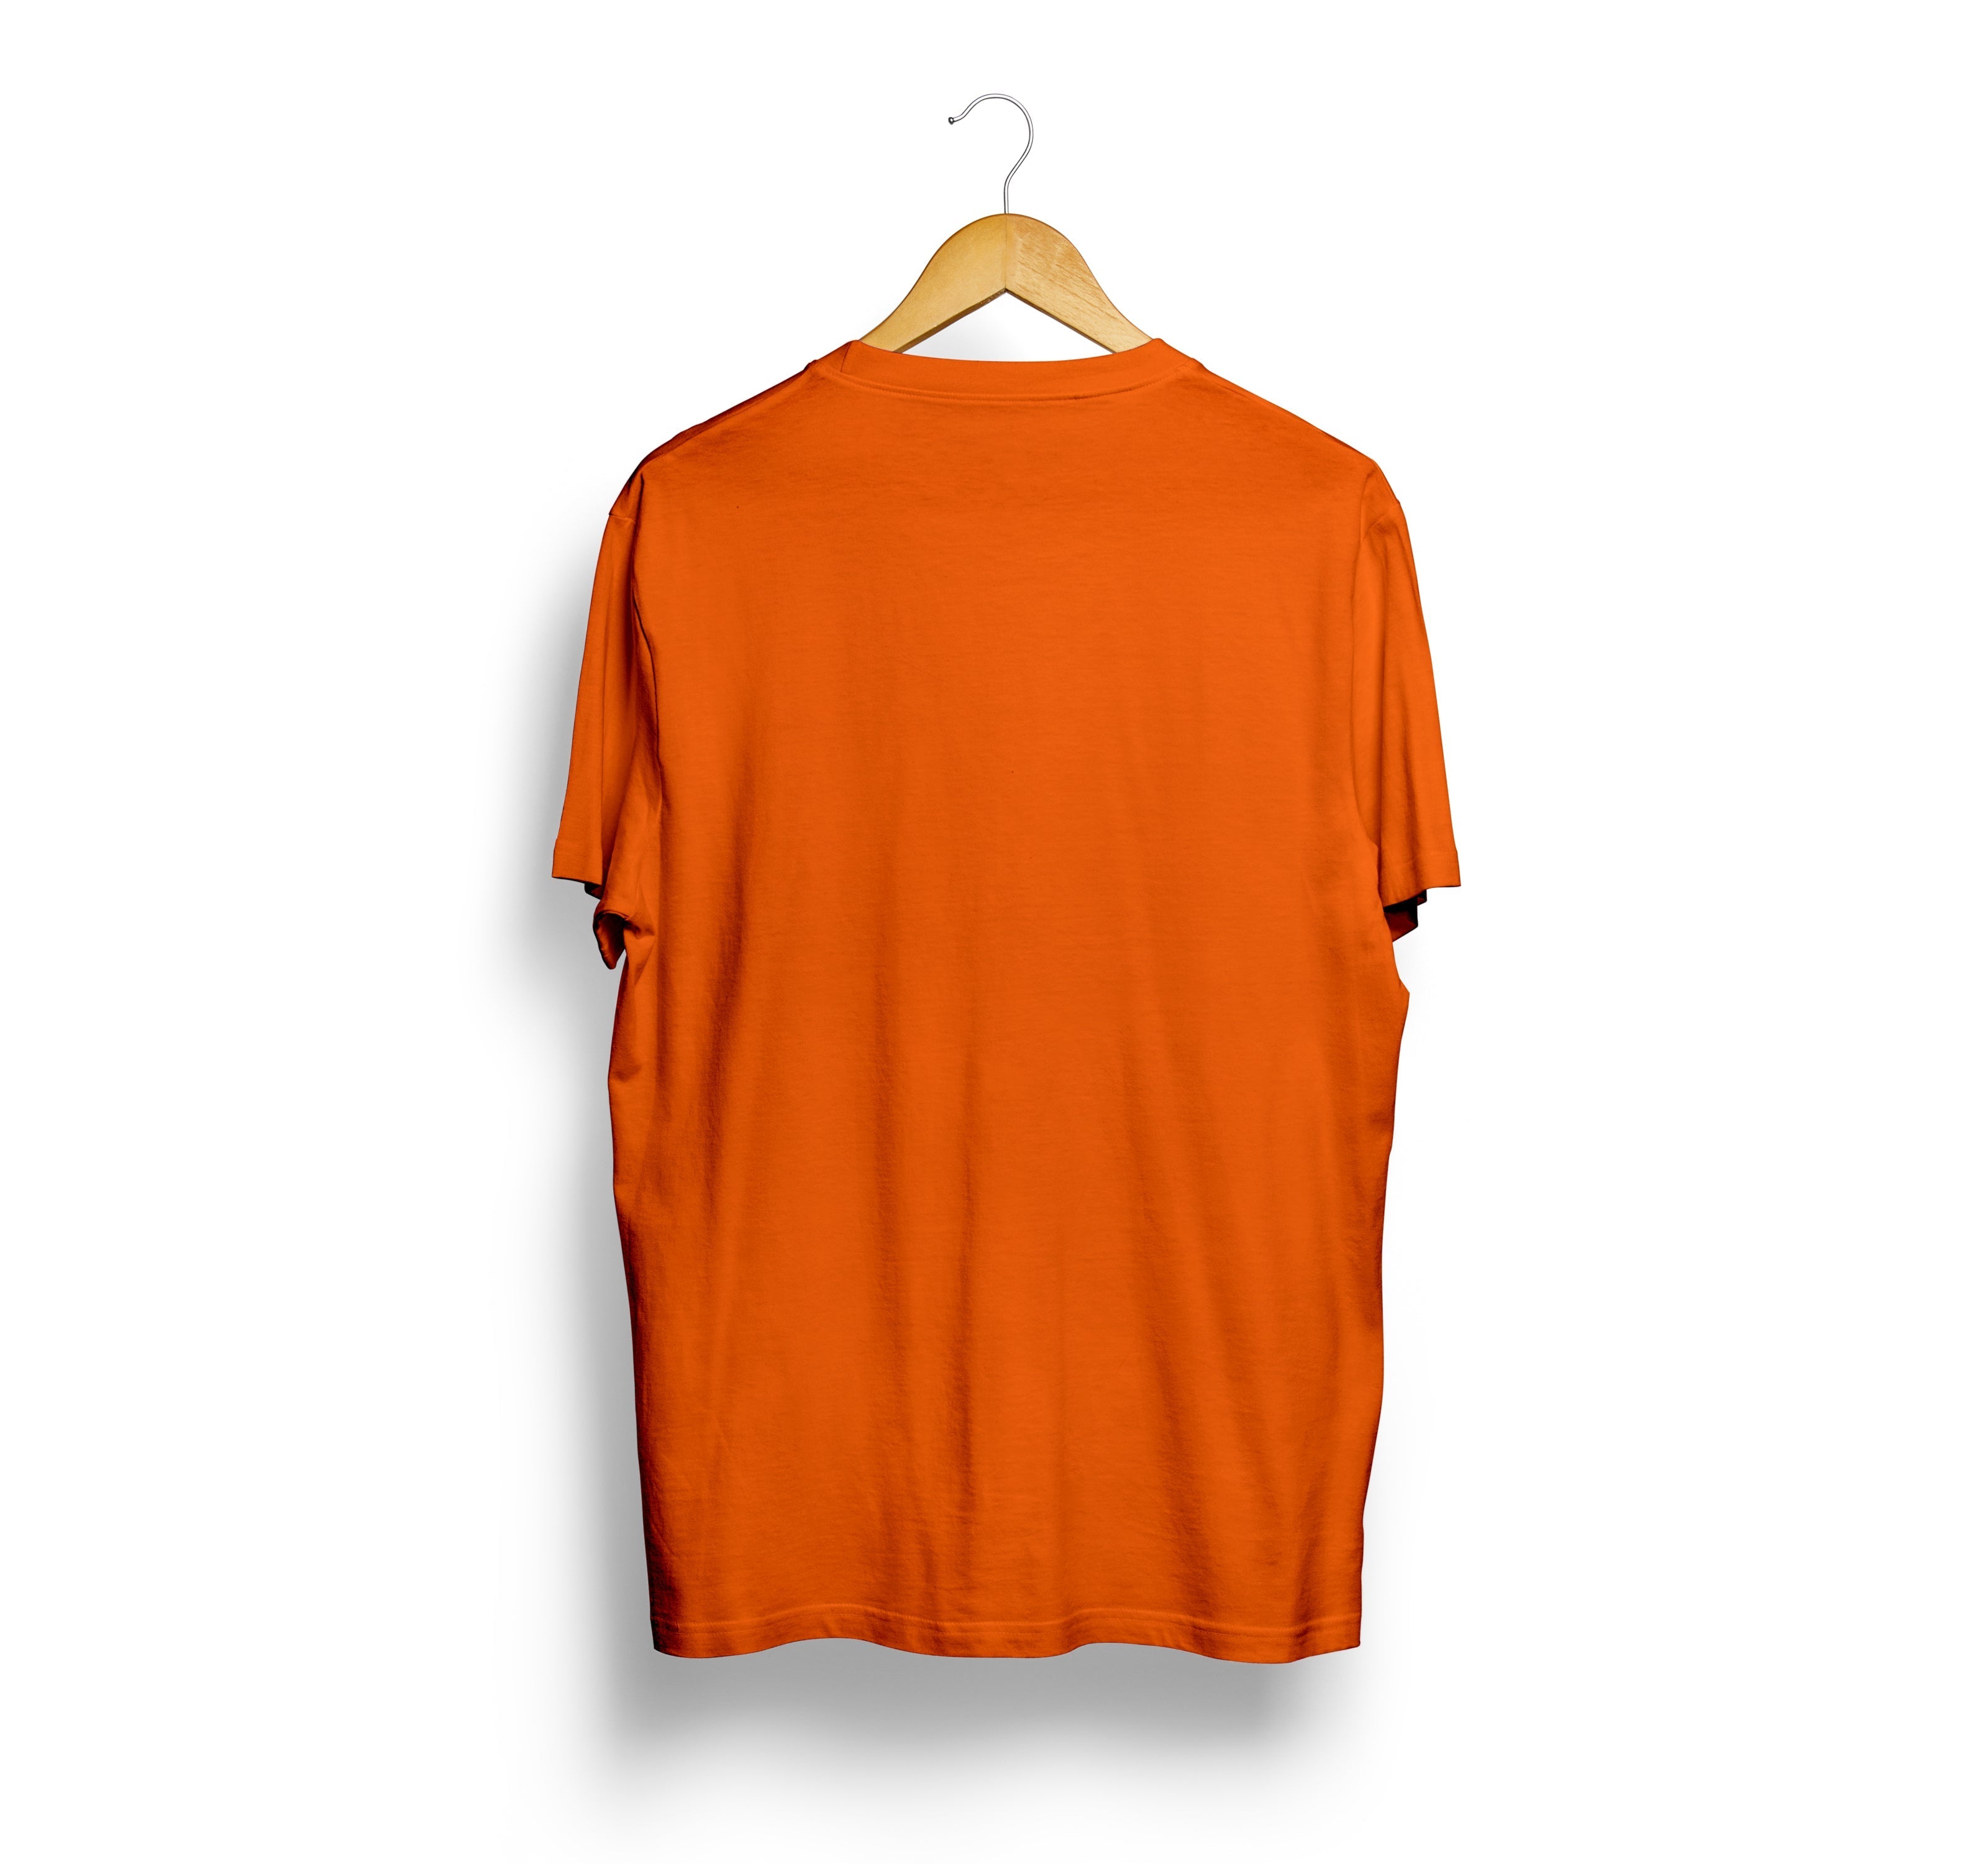 Bizzar Orange T-Shirt Back